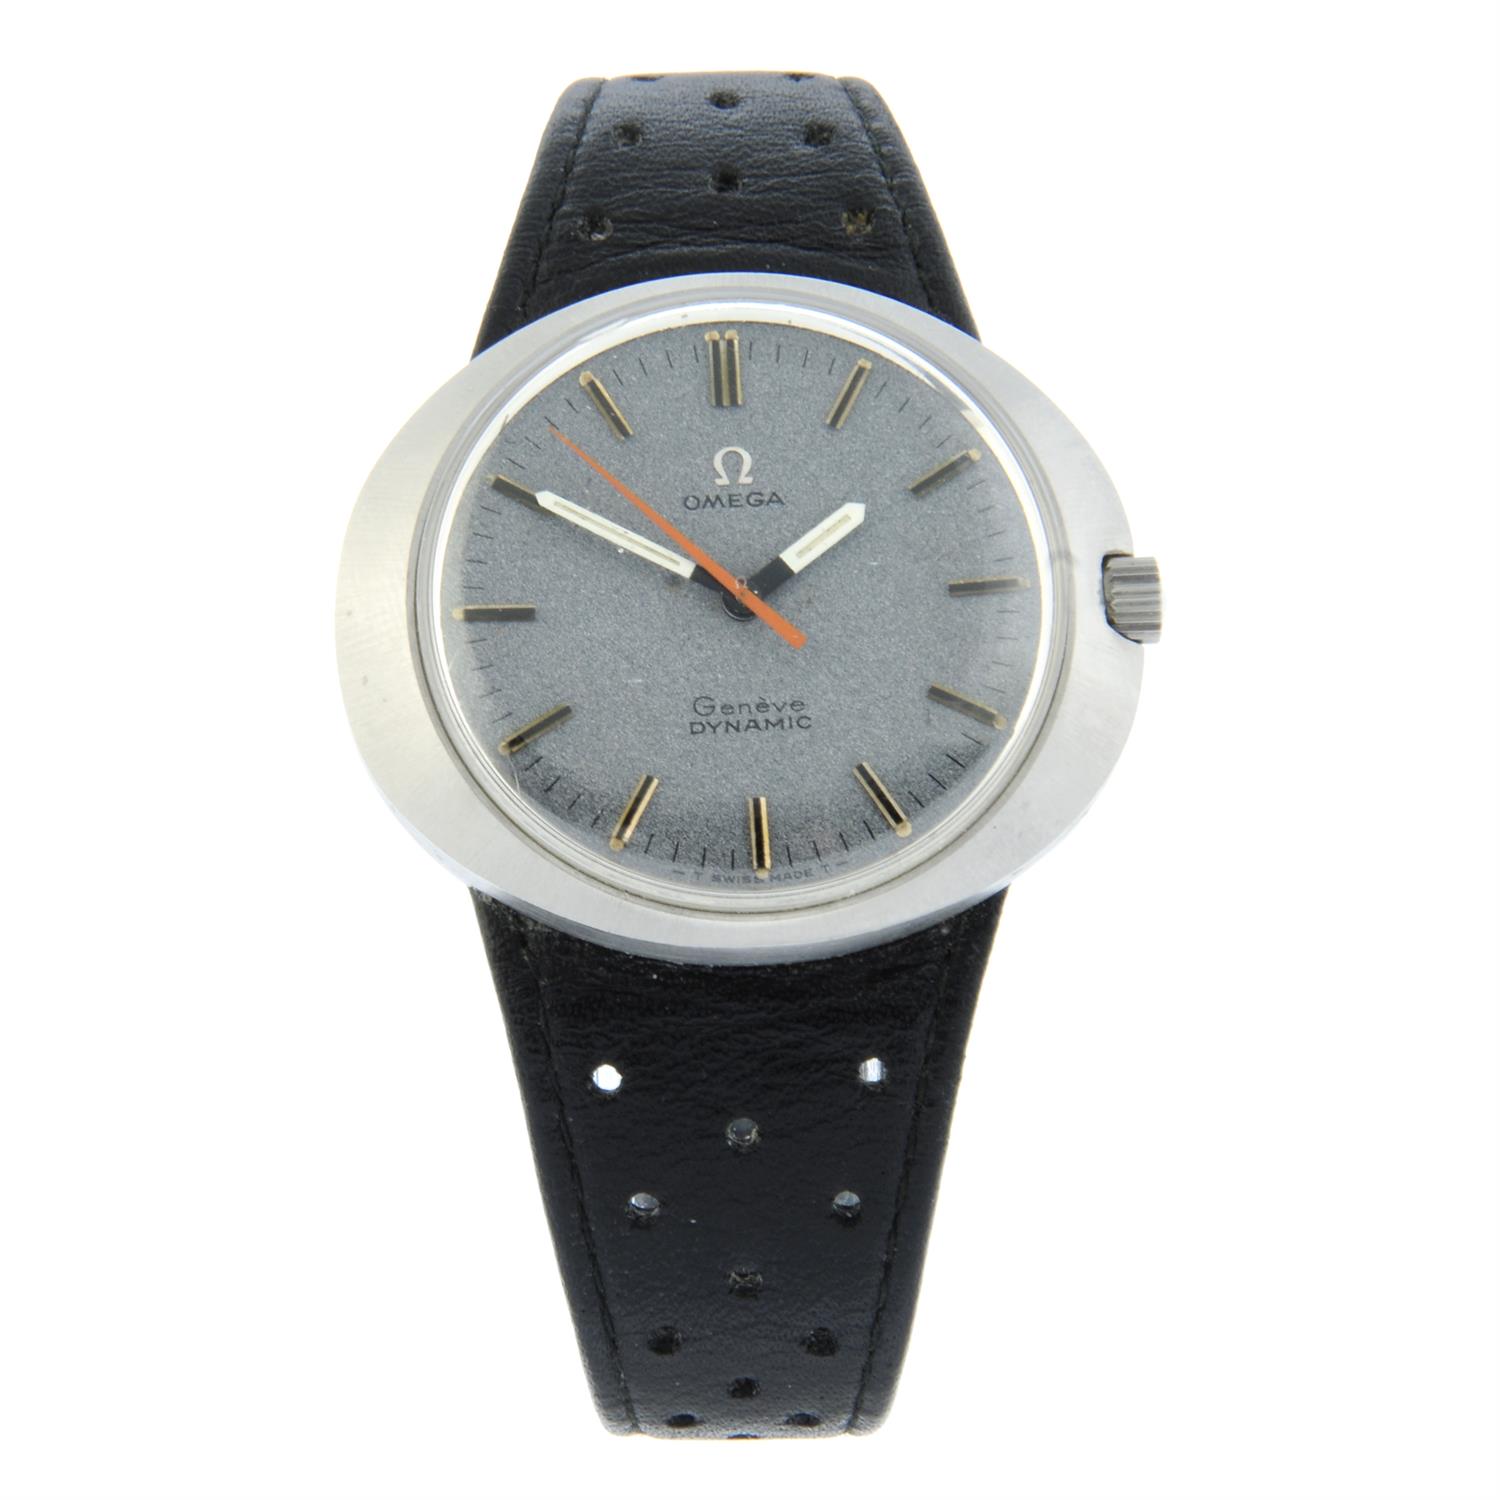 Omega - a Dynamic watch, 41mm.